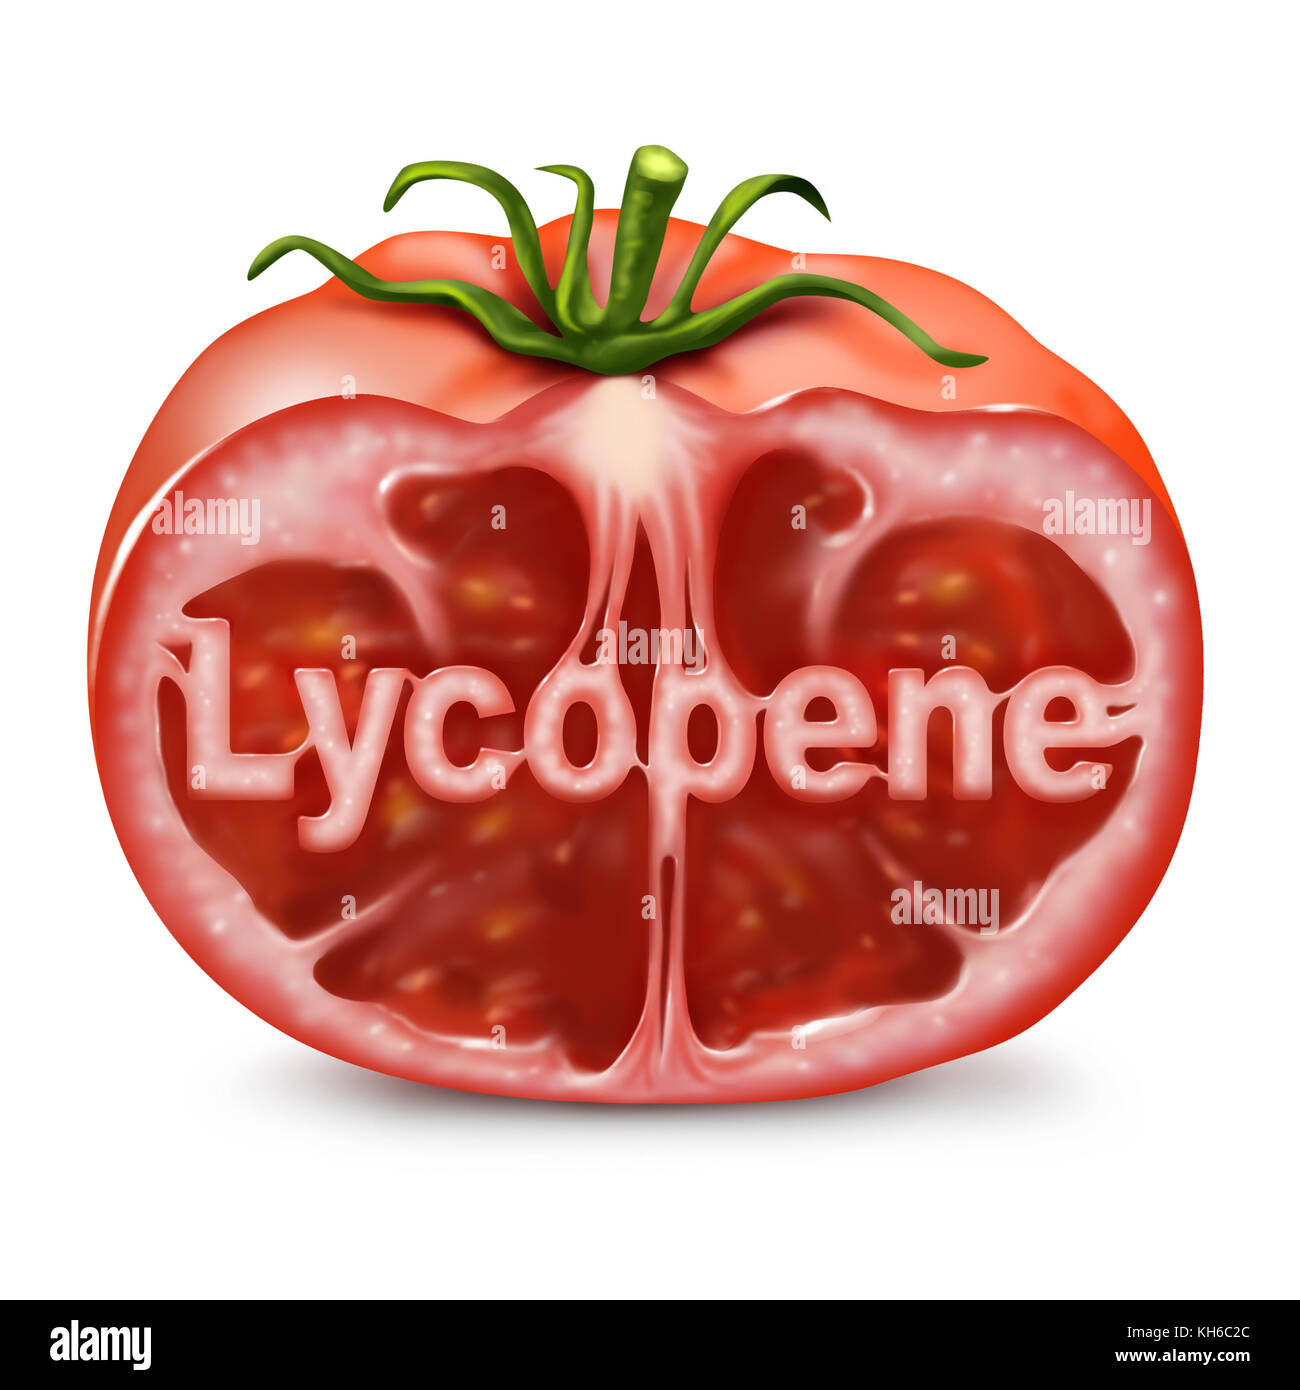 Licopene pomodoro concetto come frutto rosso tagliato con testo all'interno come integratore alimentare utilizzato per aiutare con la prevenzione del cancro come nutriente per la salute. Foto Stock